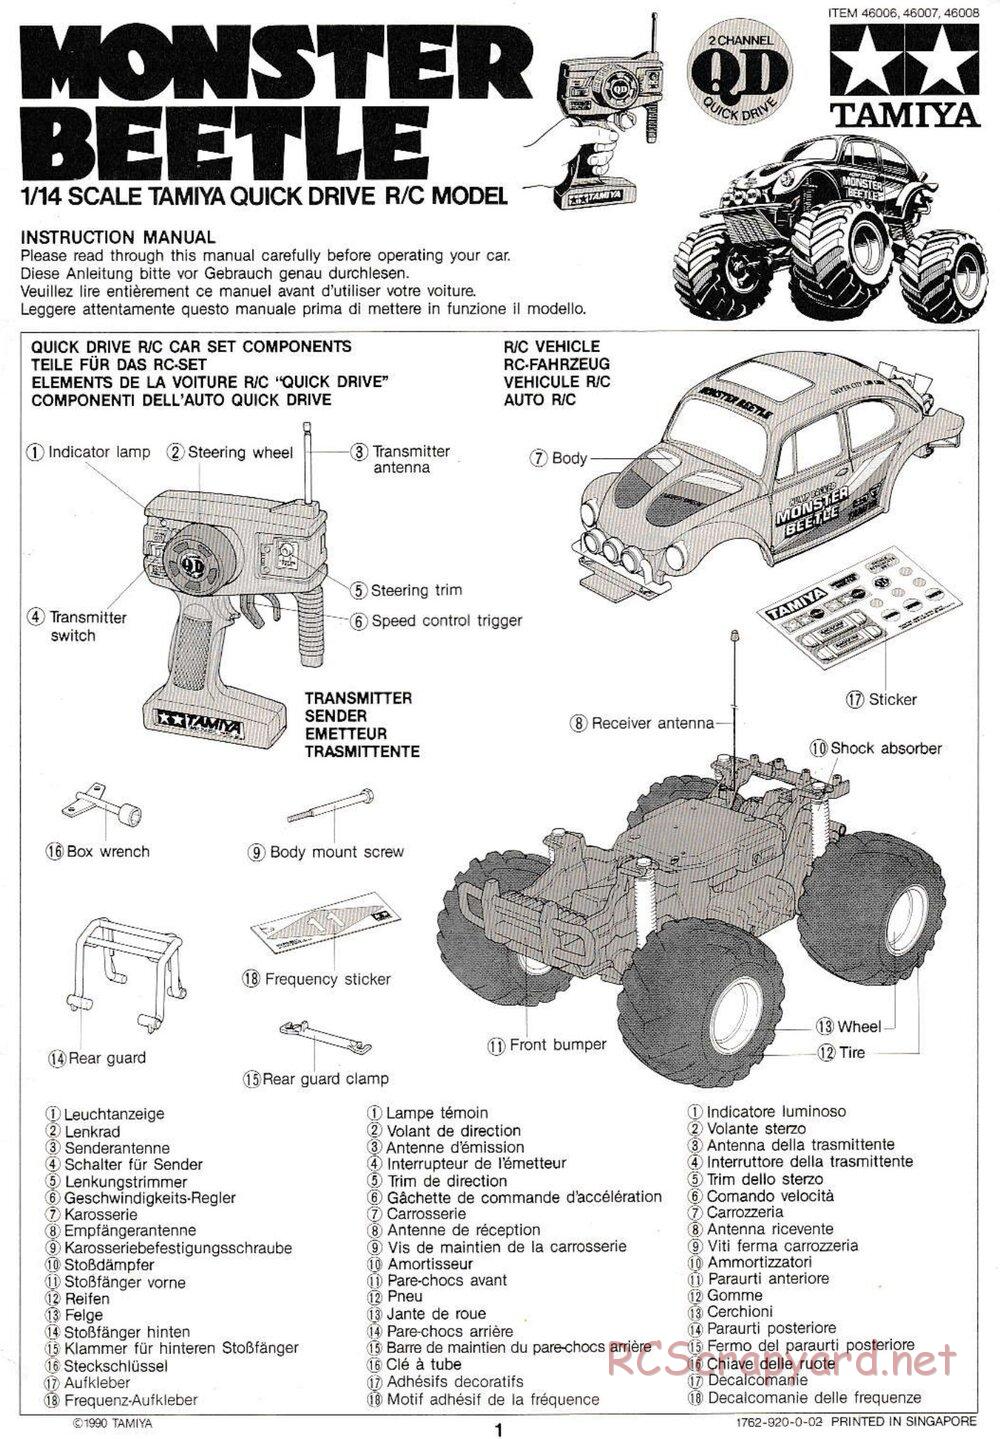 Tamiya - Monster Beetle QD Chassis - Manual - Page 1